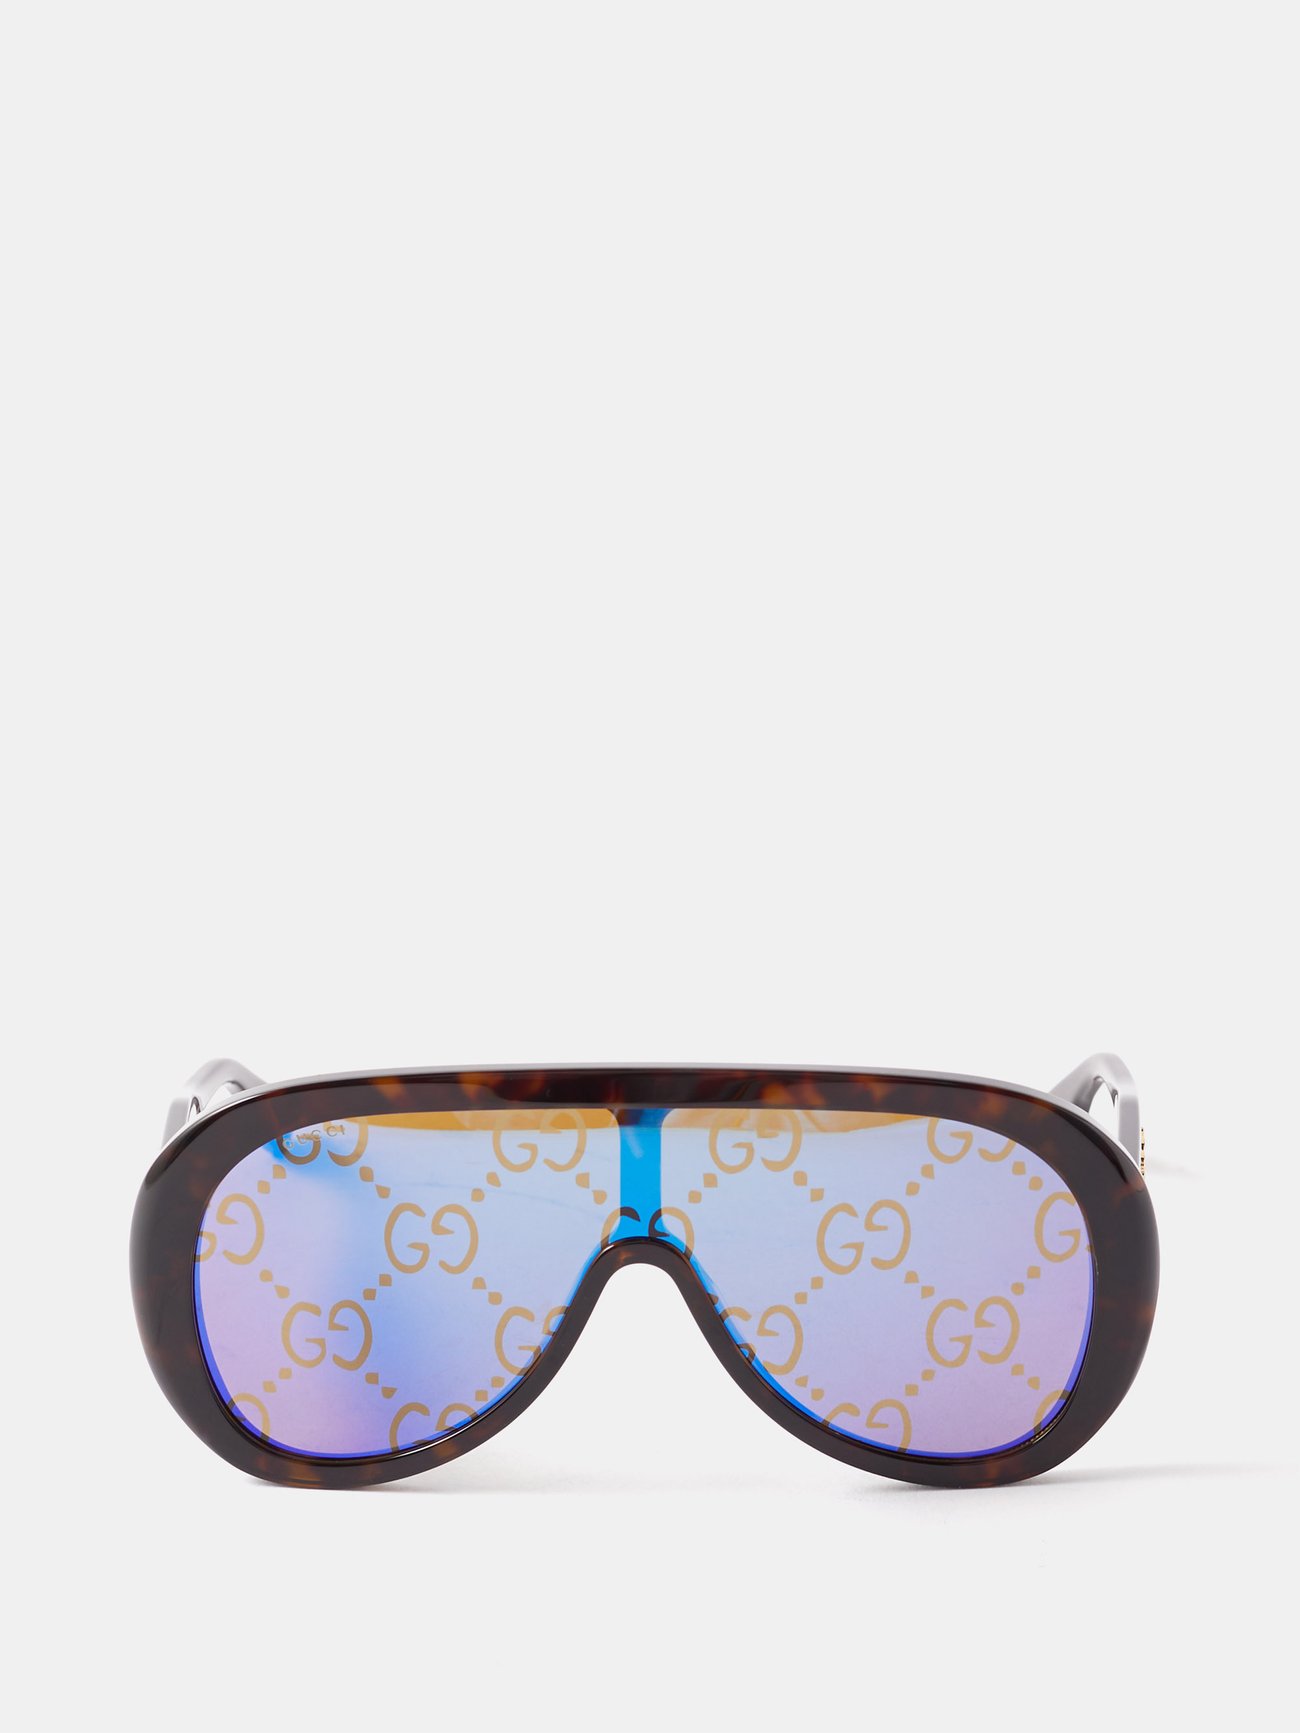 My Monogram square sunglasses in tortoiseshell